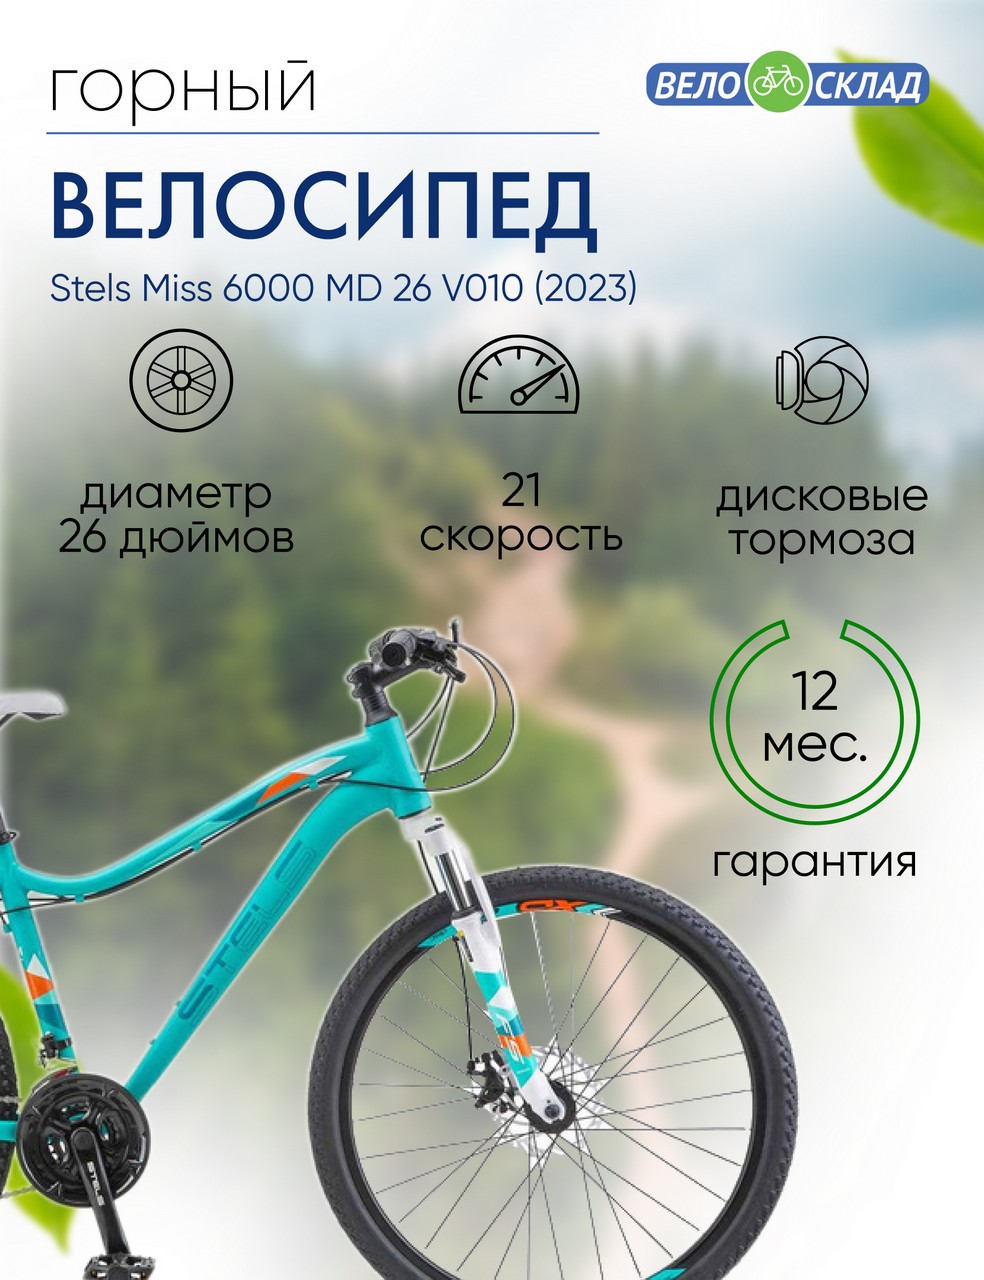 Женский велосипед Stels Miss 6000 MD 26 V010, год 2023, цвет Зеленый, ростовка 17